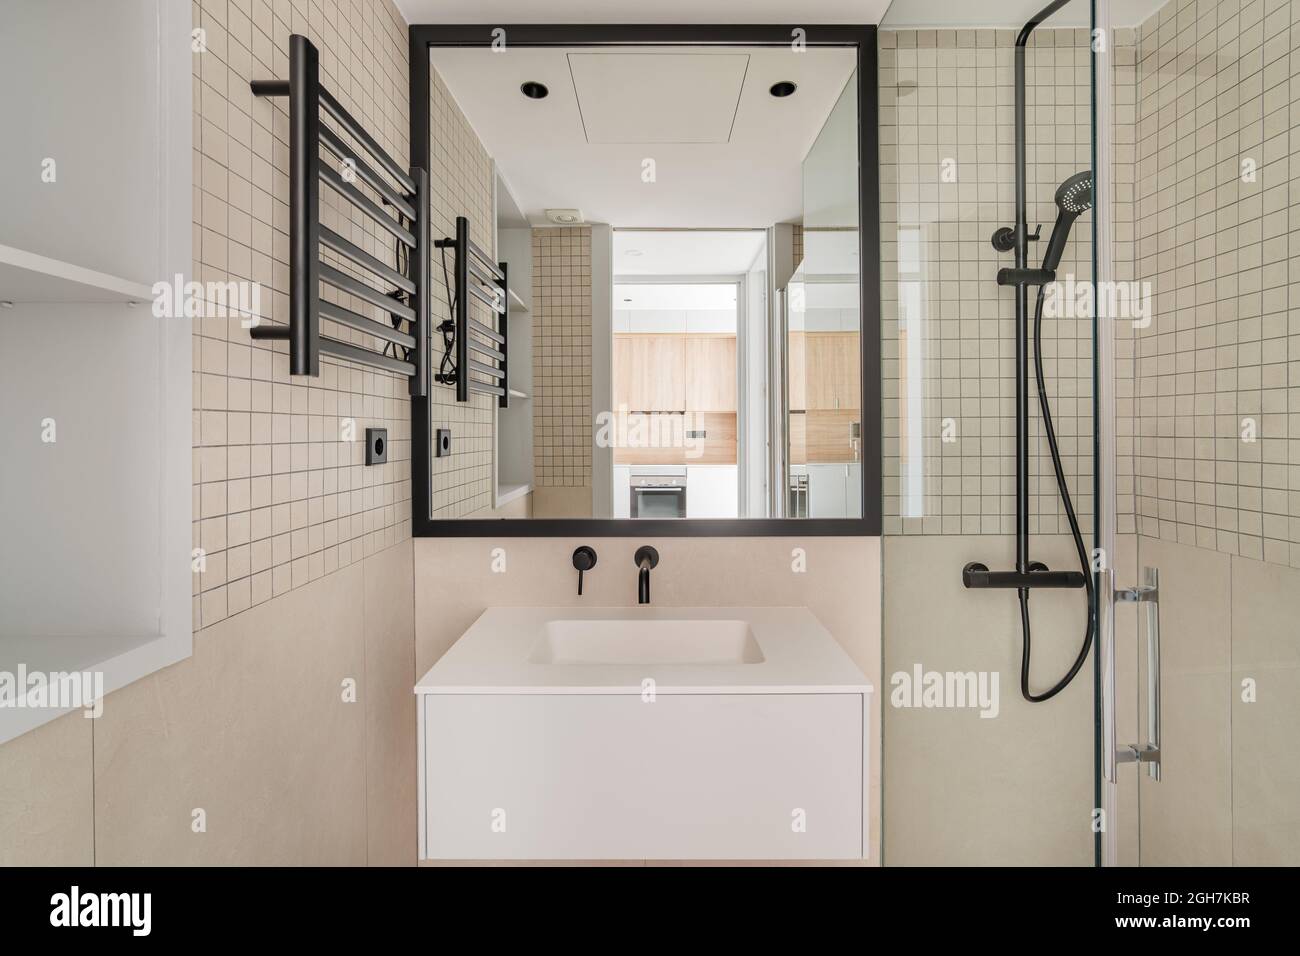 Moderno diseño interior de baño en beige con decoración de metal negro.  Vista frontal del cuarto de baño con cocina reglectada en el espejo  Fotografía de stock - Alamy